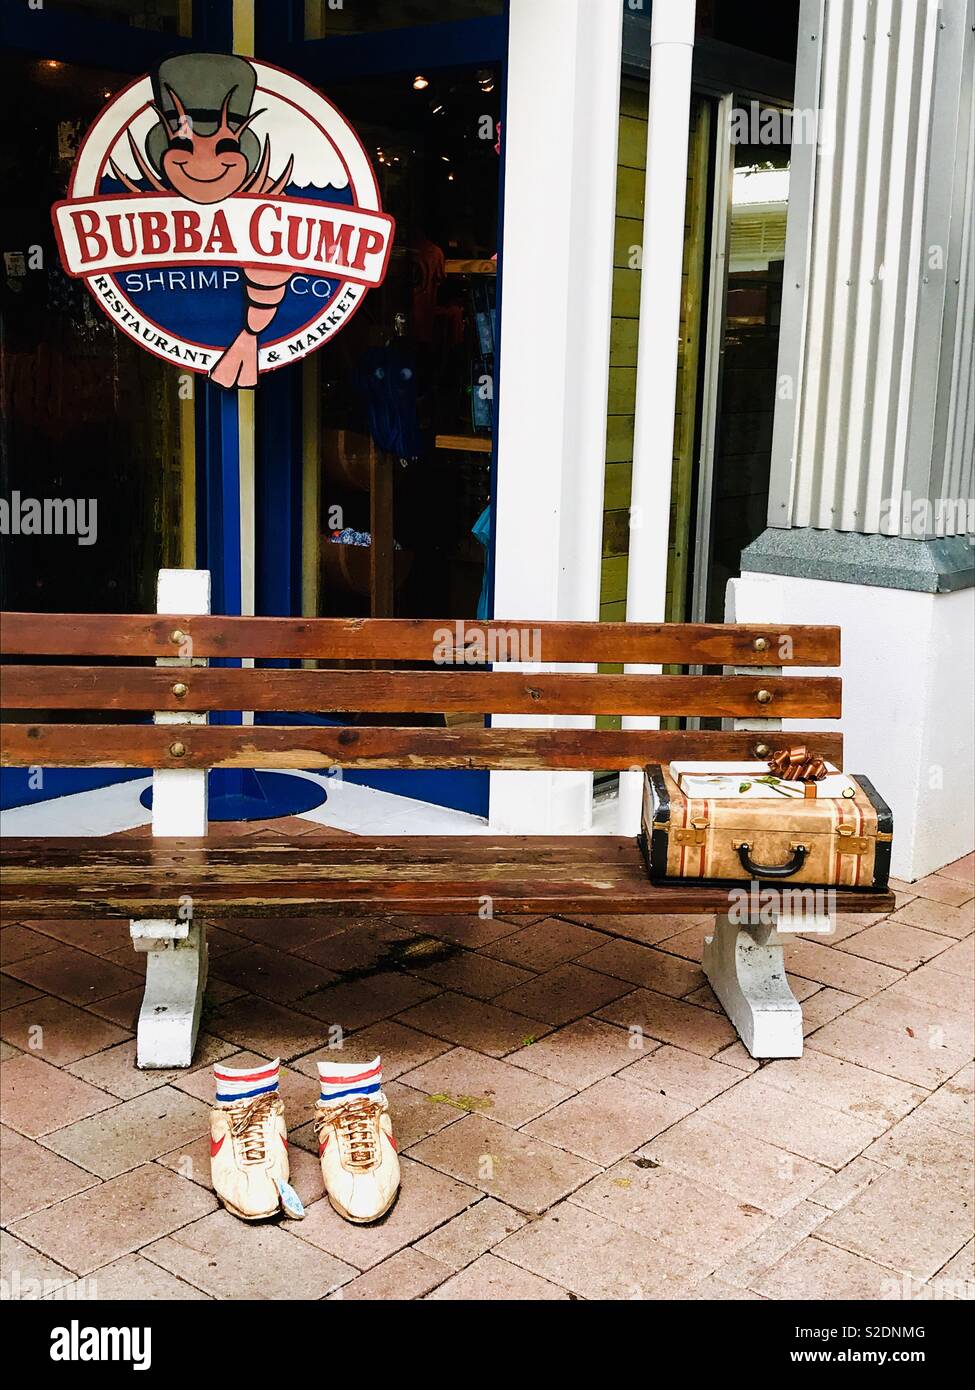 Bubba Gump Shrimp Co Ristorante e mercato, banco con valigia, presente e scarpe da corsa Foto Stock